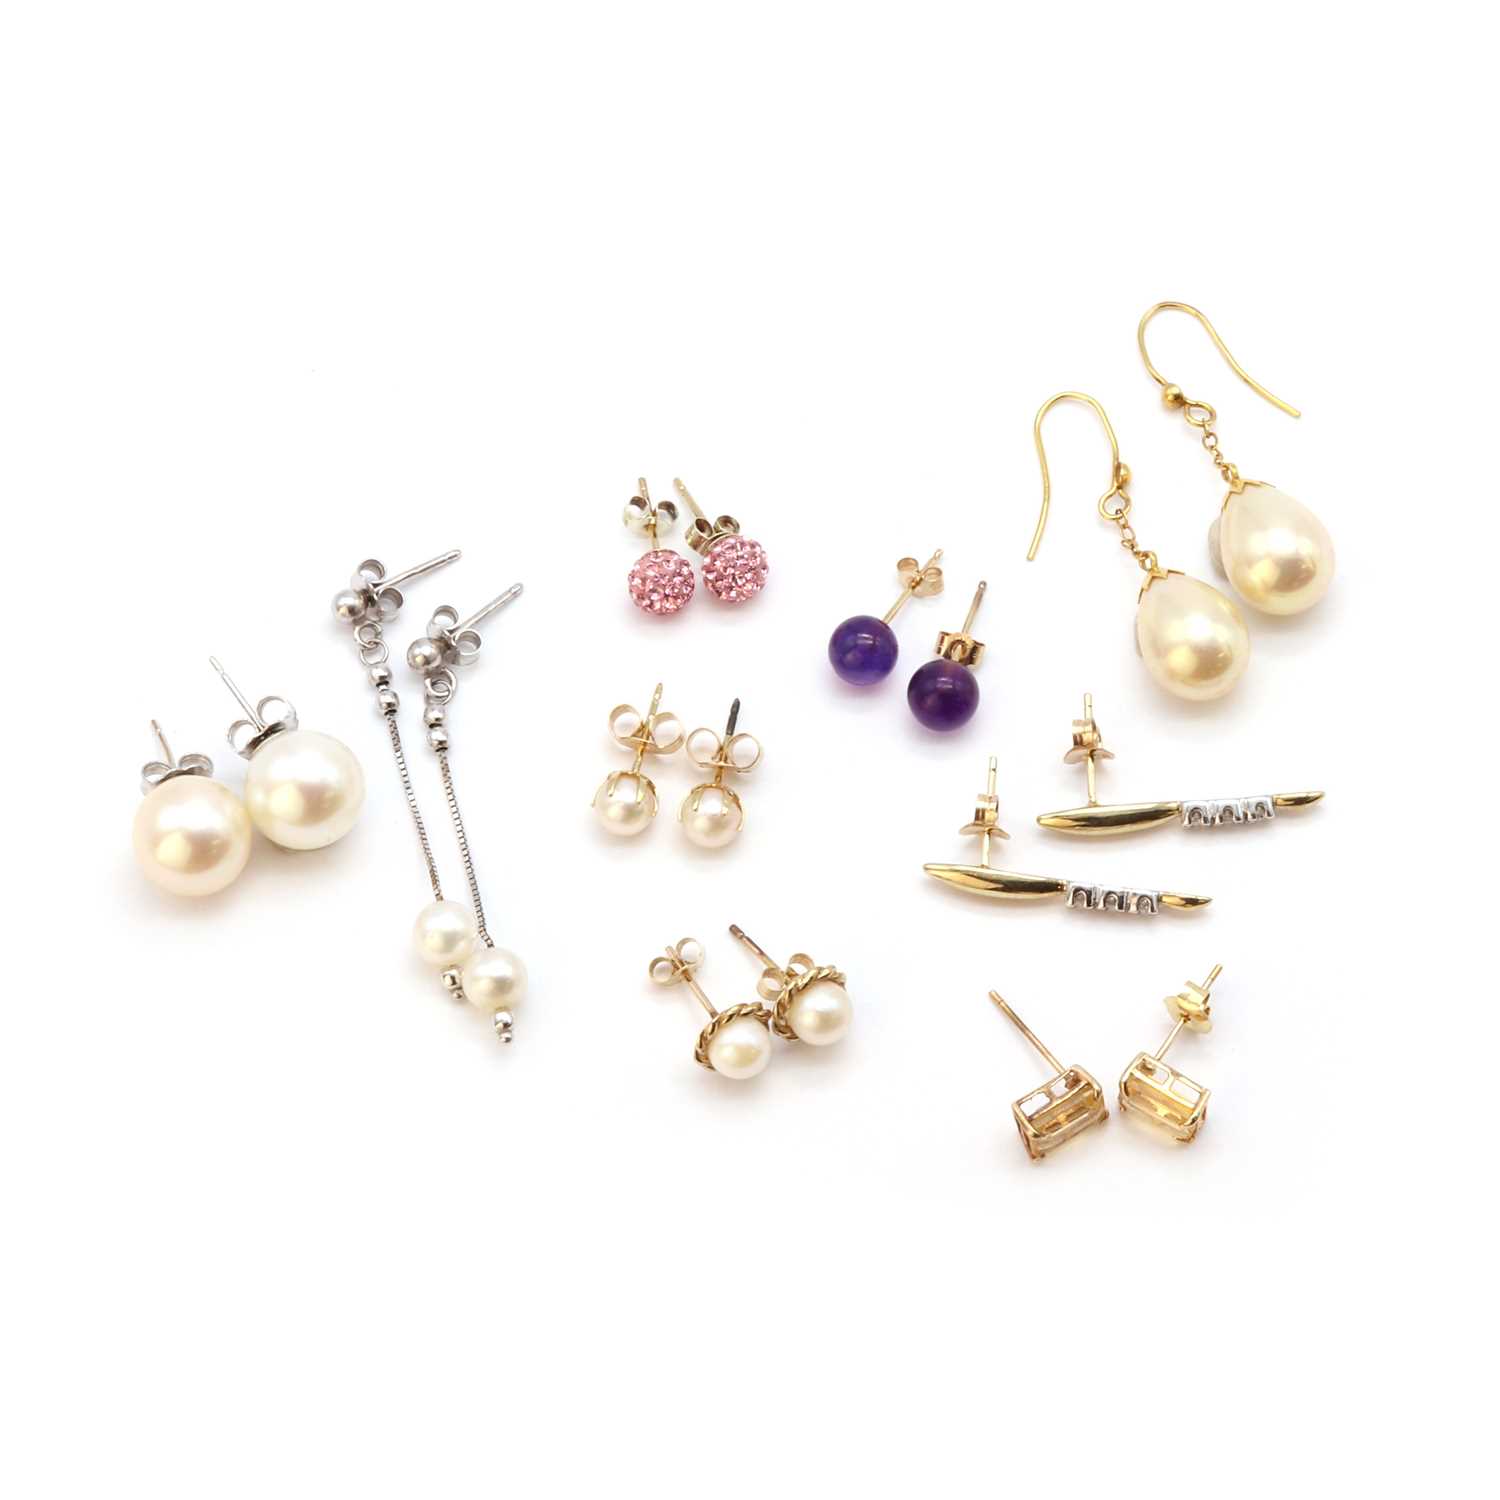 Nine pairs of earrings,